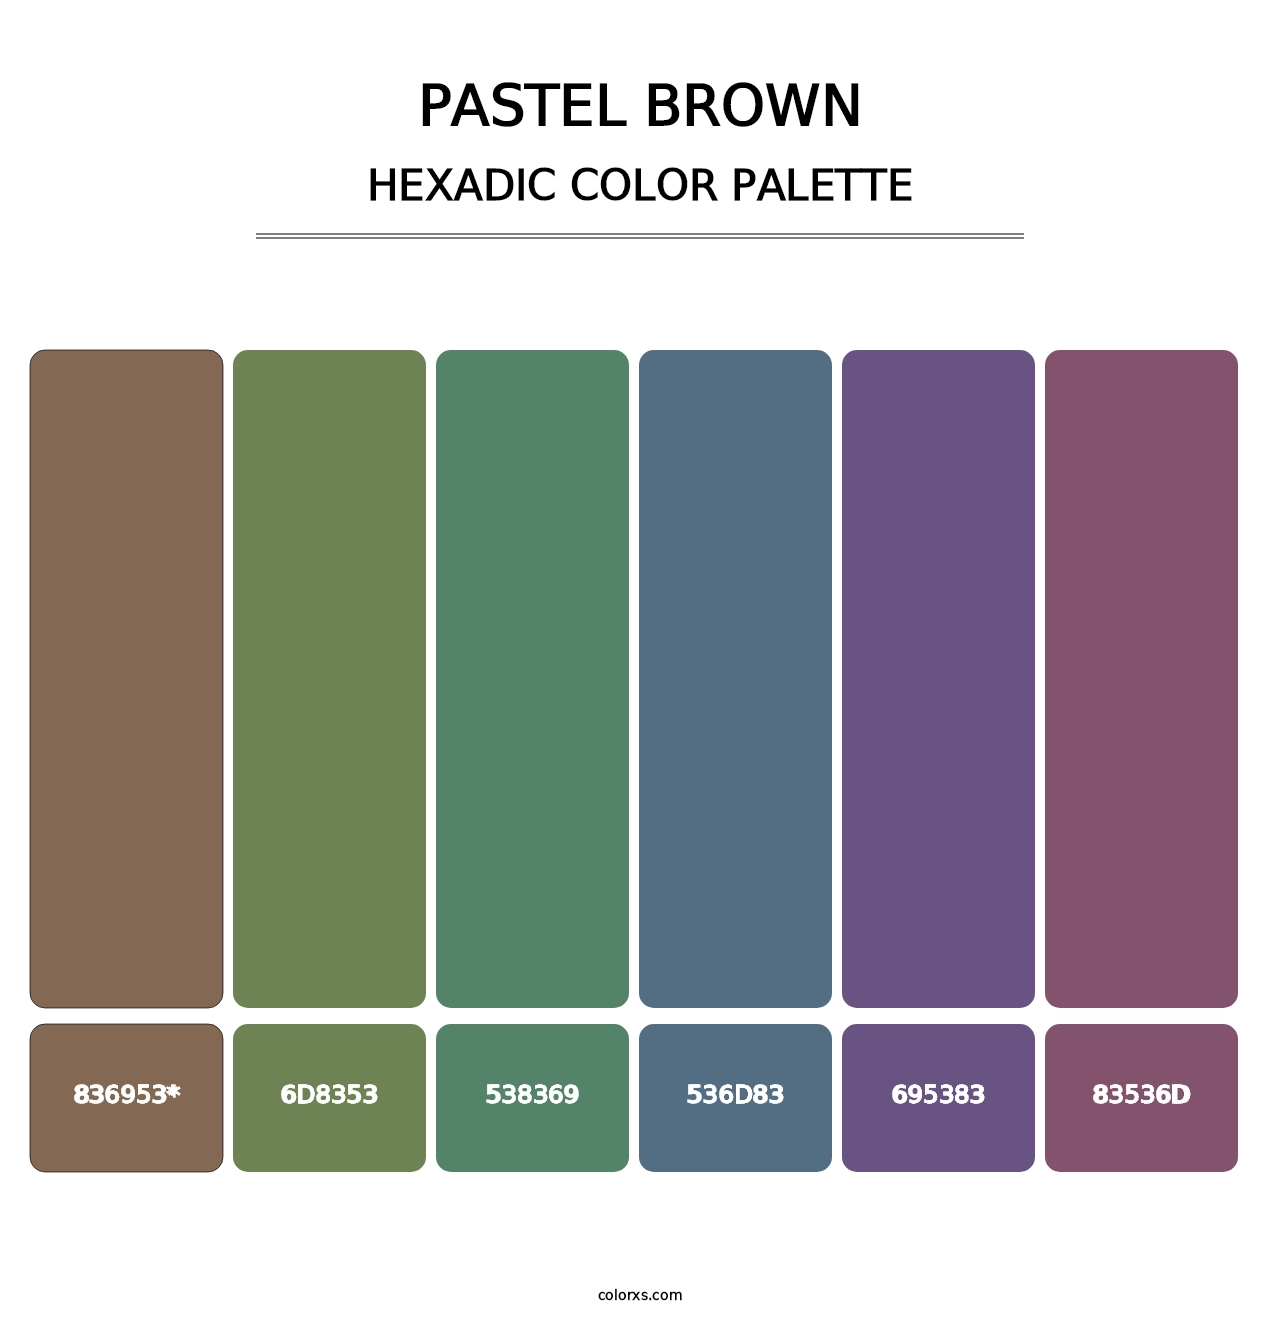 Pastel Brown - Hexadic Color Palette